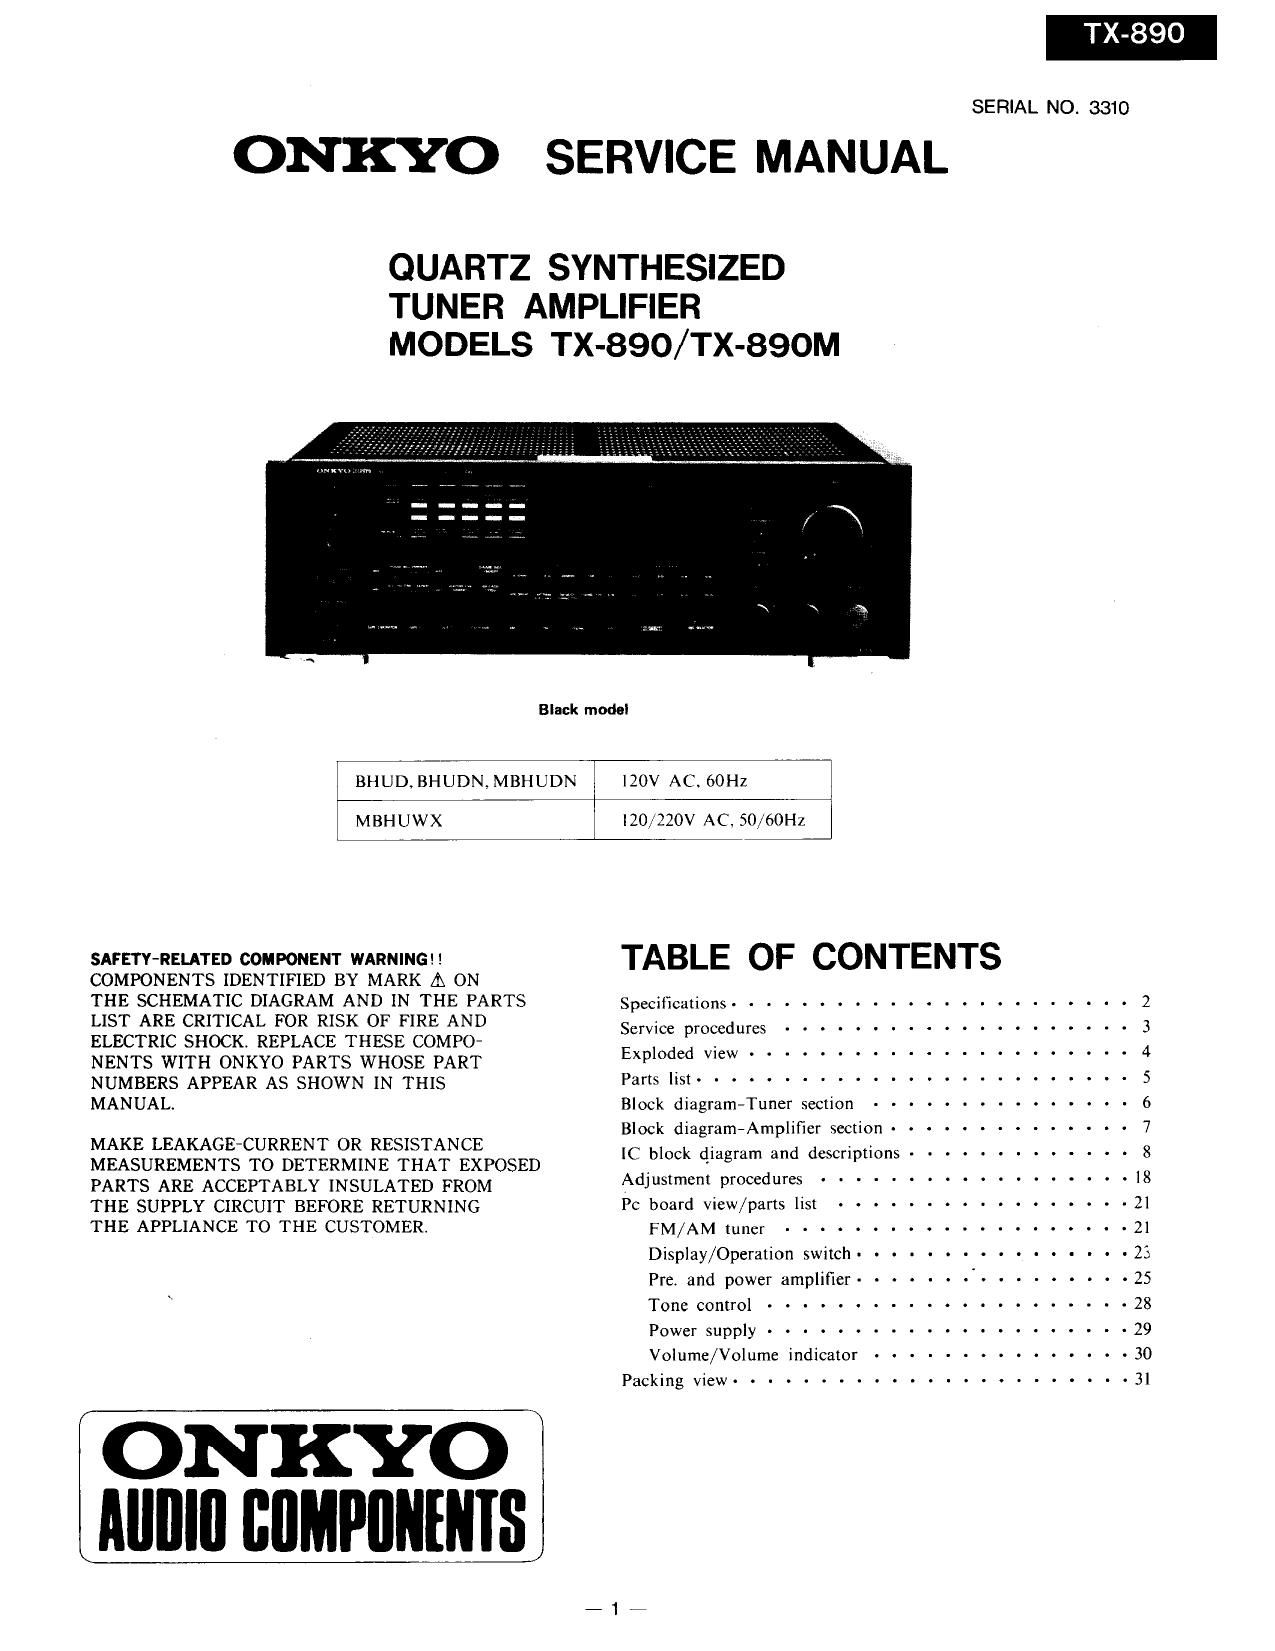 Onkyo TX 890 Service Manual